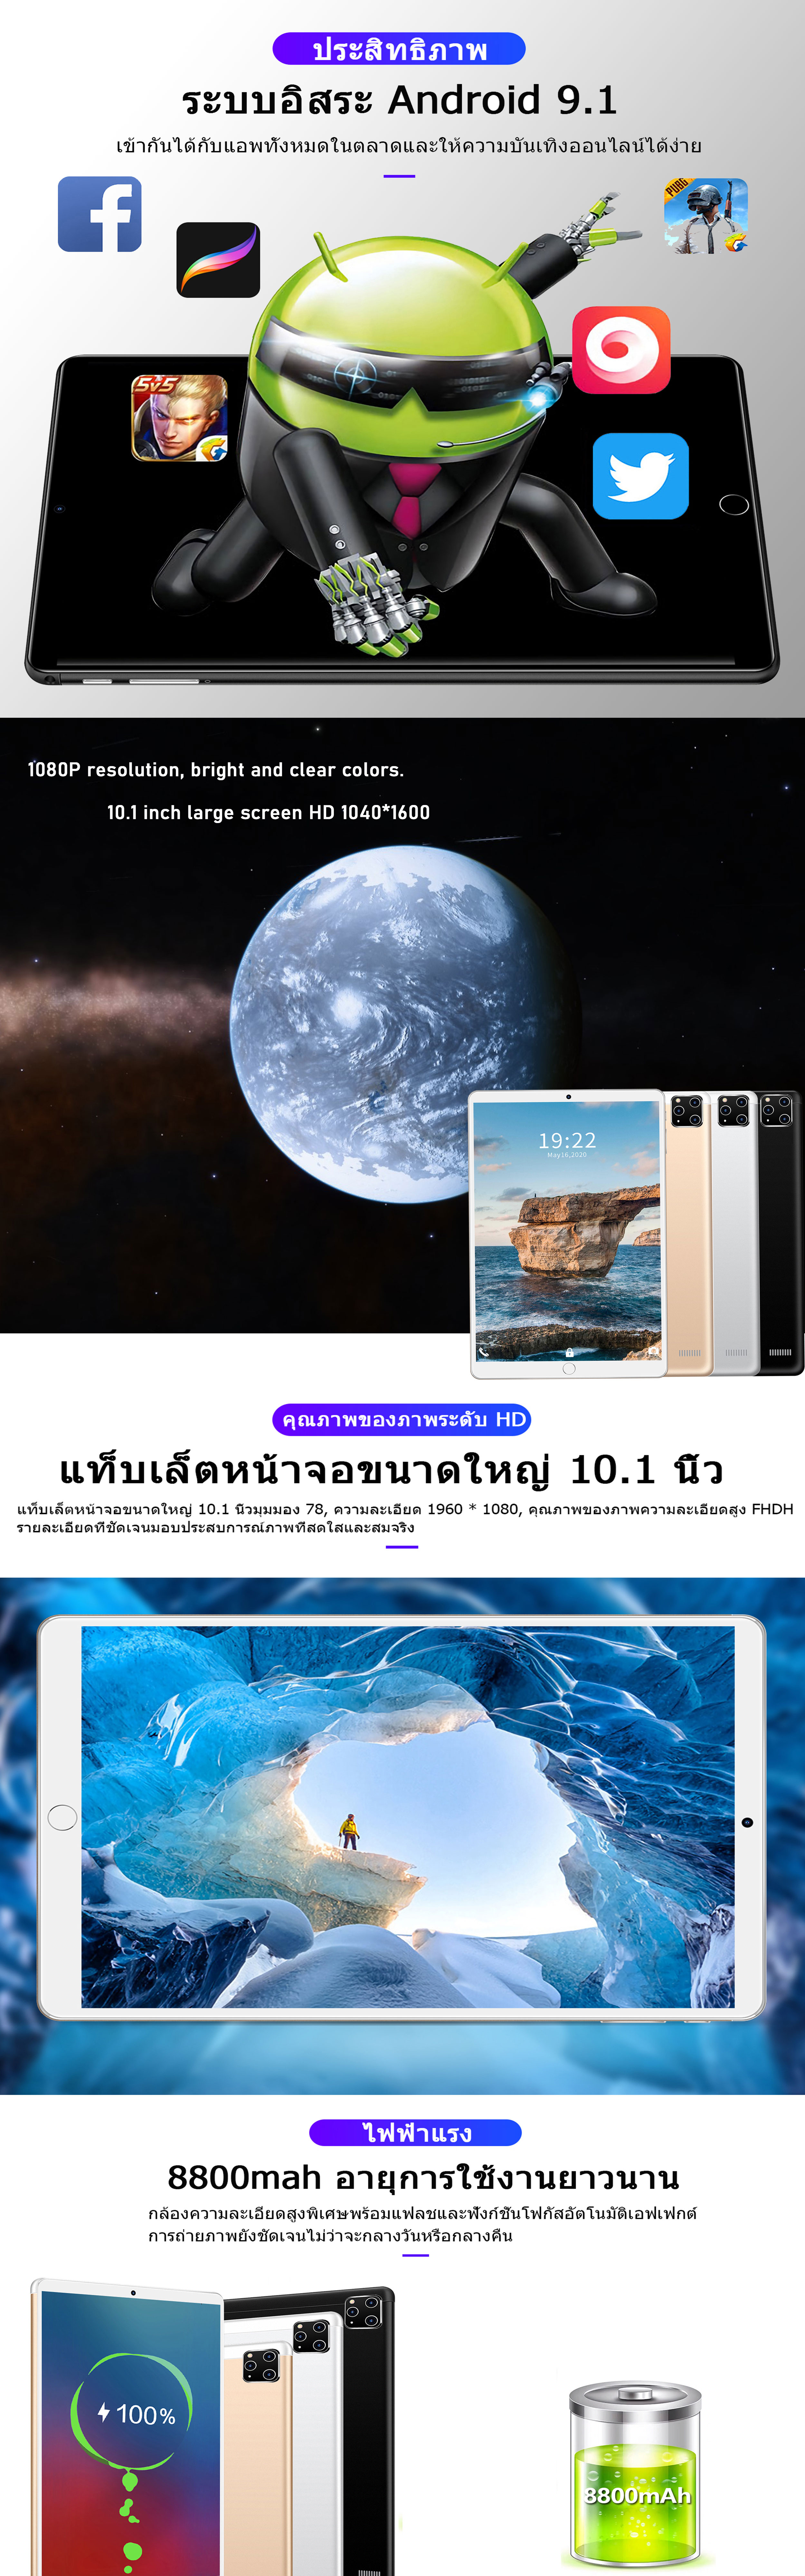 คำอธิบายเพิ่มเติมเกี่ยวกับ Thailand realmi แท็บเล็ตแท้ล่าสุดในปี 2022 แท็บเล็ตหน้าจอขนาดใหญ่ 10.1 นิ้วแท็บเล็ตราคาไม่แพงหน่วยความจำ 8+256GB แบตเตอรี่ 8800mah กล้อง 13+24MP การจดจำลาย